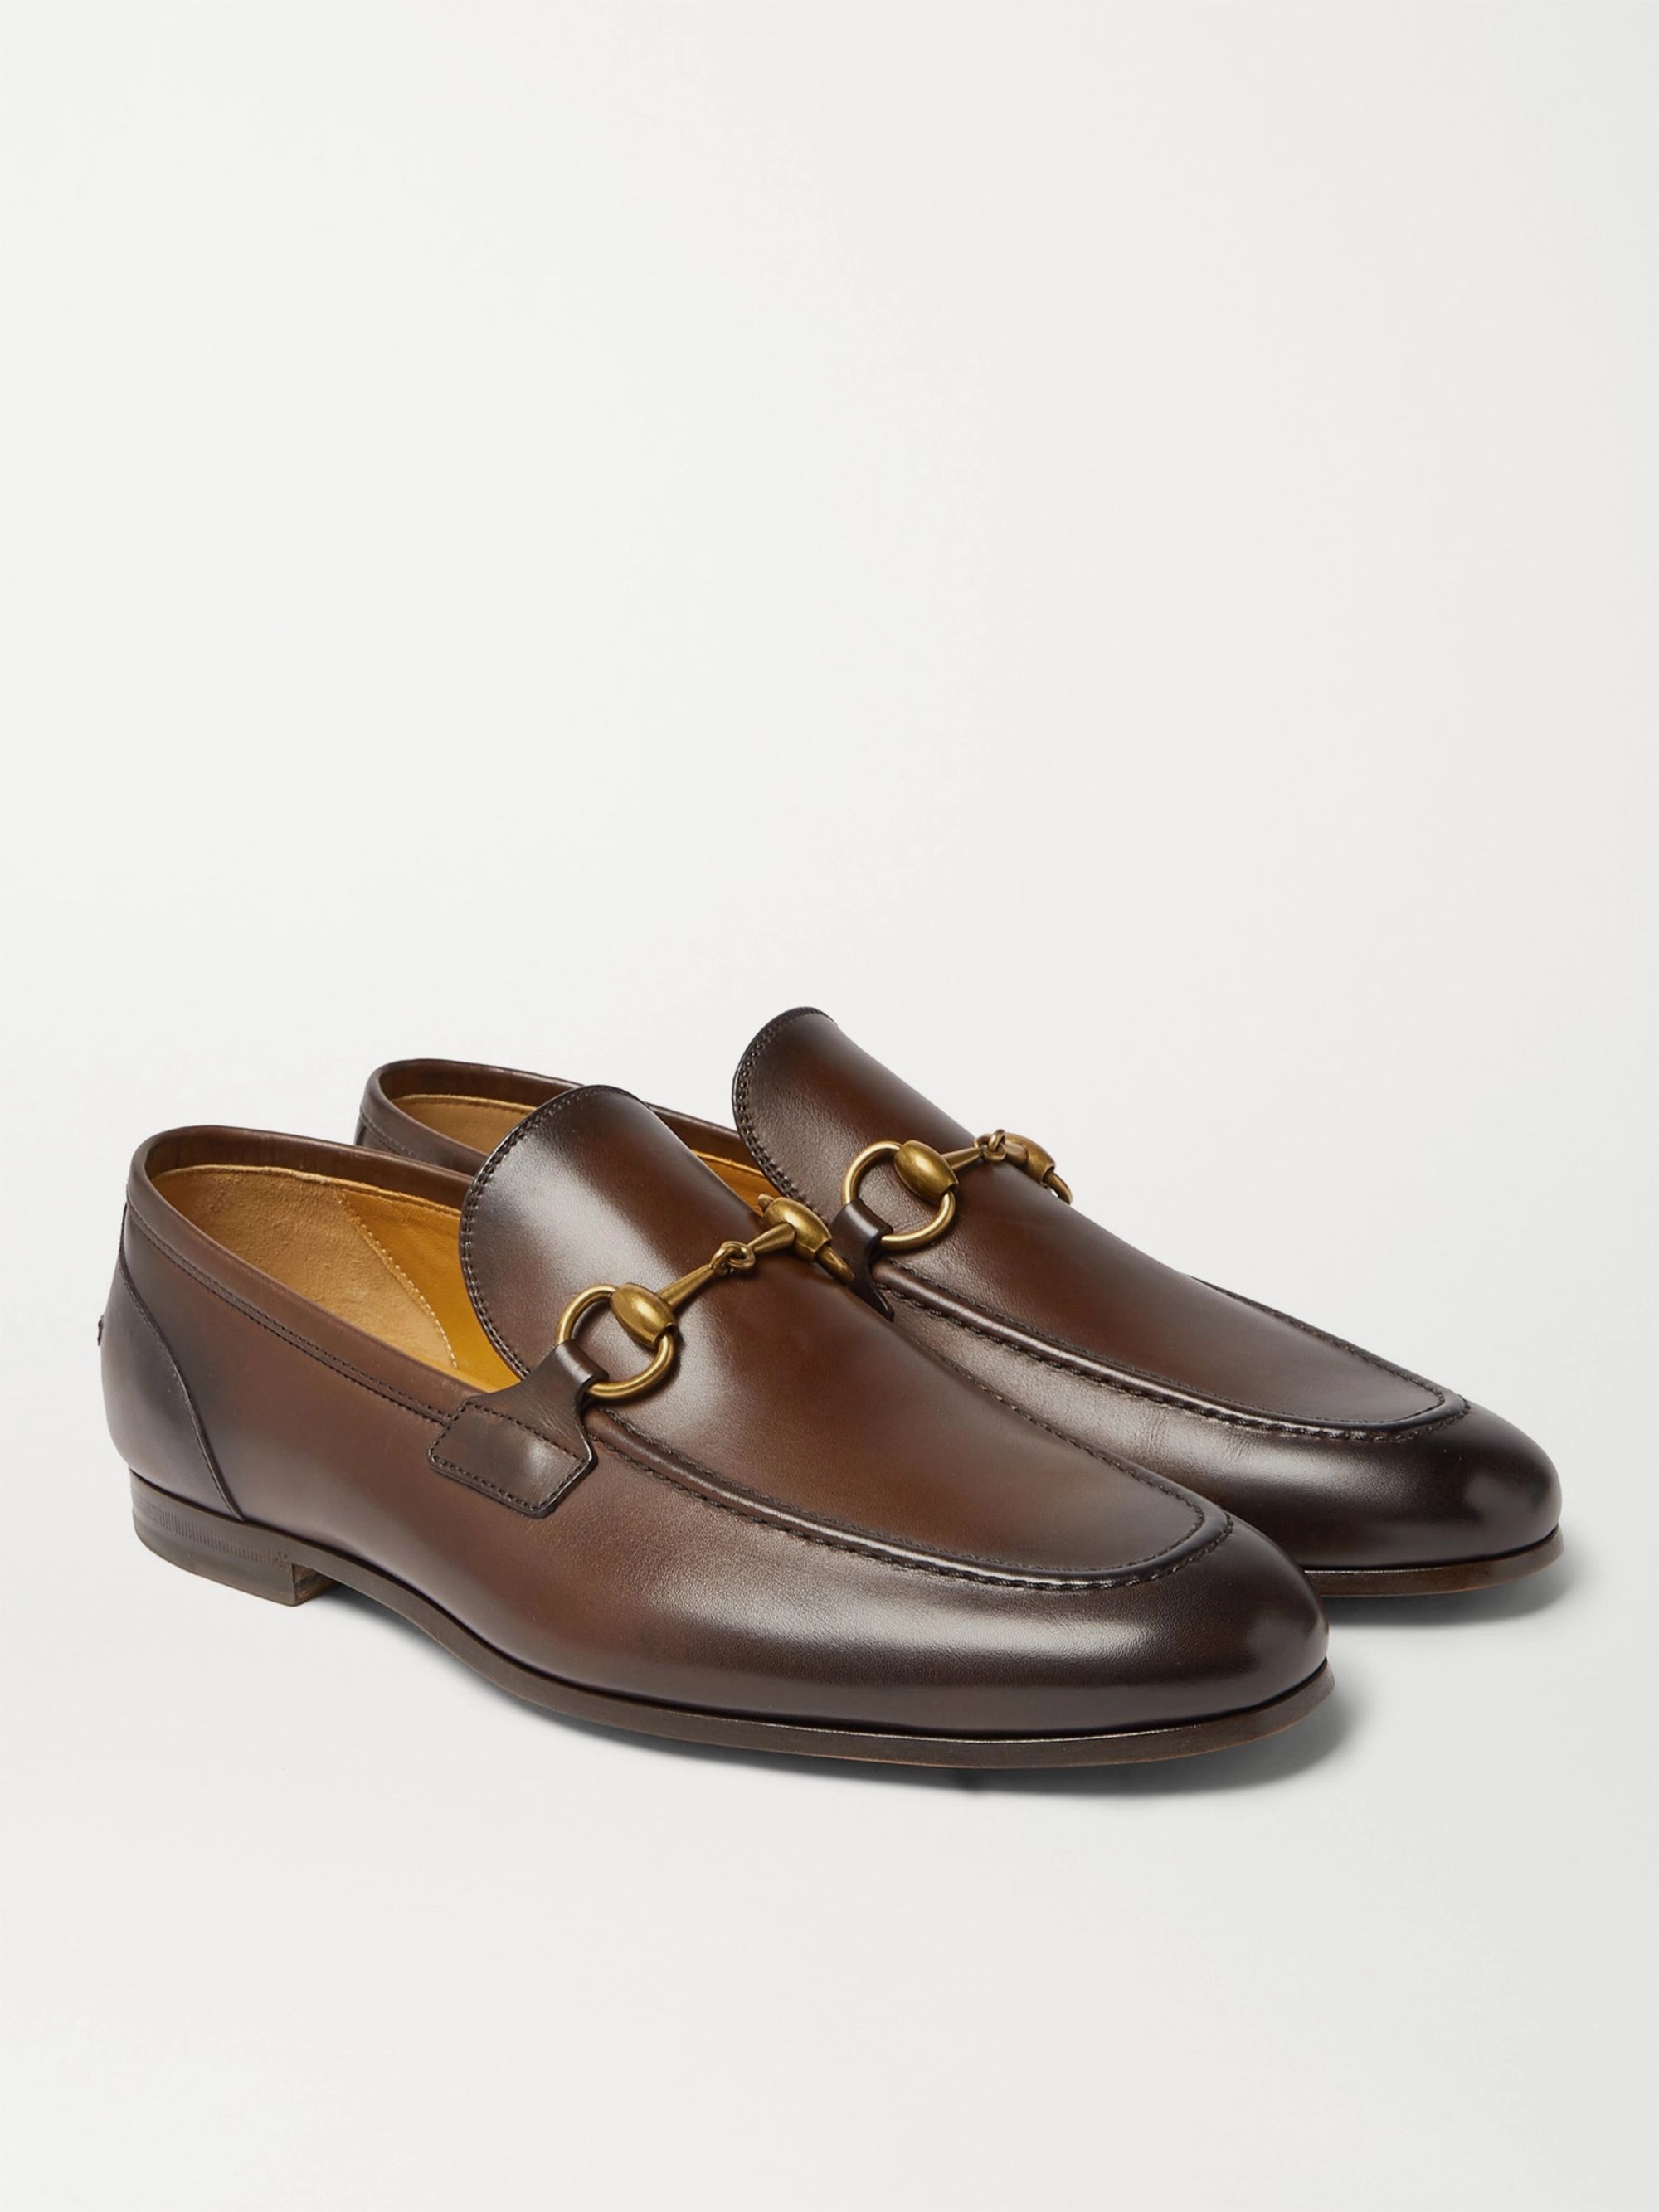 gucci leather shoes men